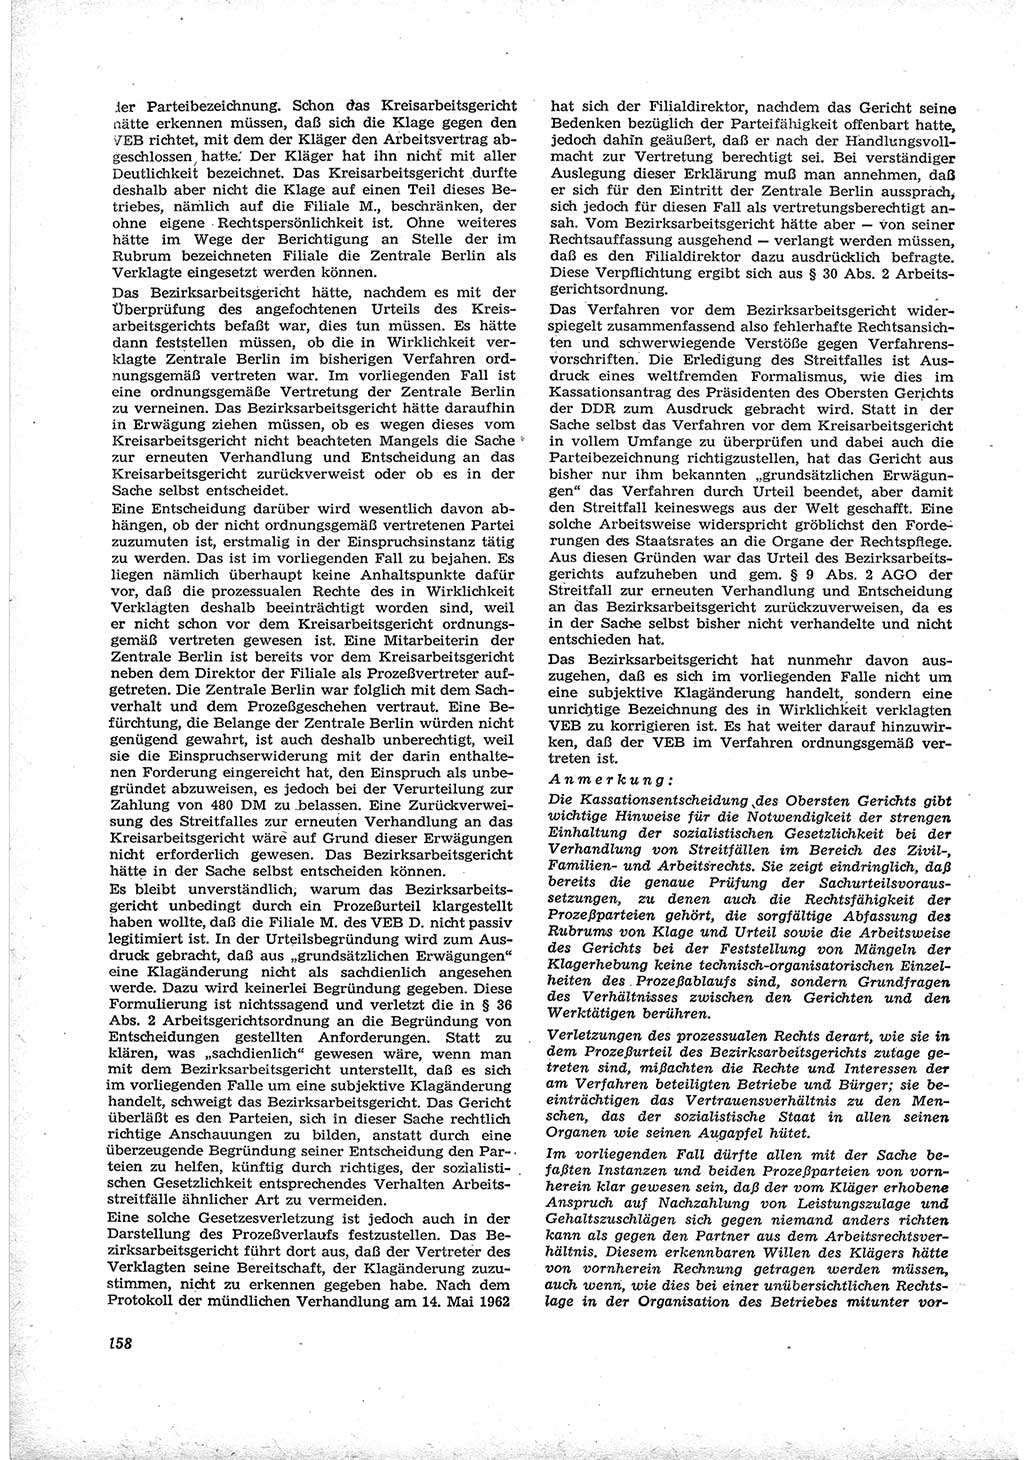 Neue Justiz (NJ), Zeitschrift für Recht und Rechtswissenschaft [Deutsche Demokratische Republik (DDR)], 17. Jahrgang 1963, Seite 158 (NJ DDR 1963, S. 158)